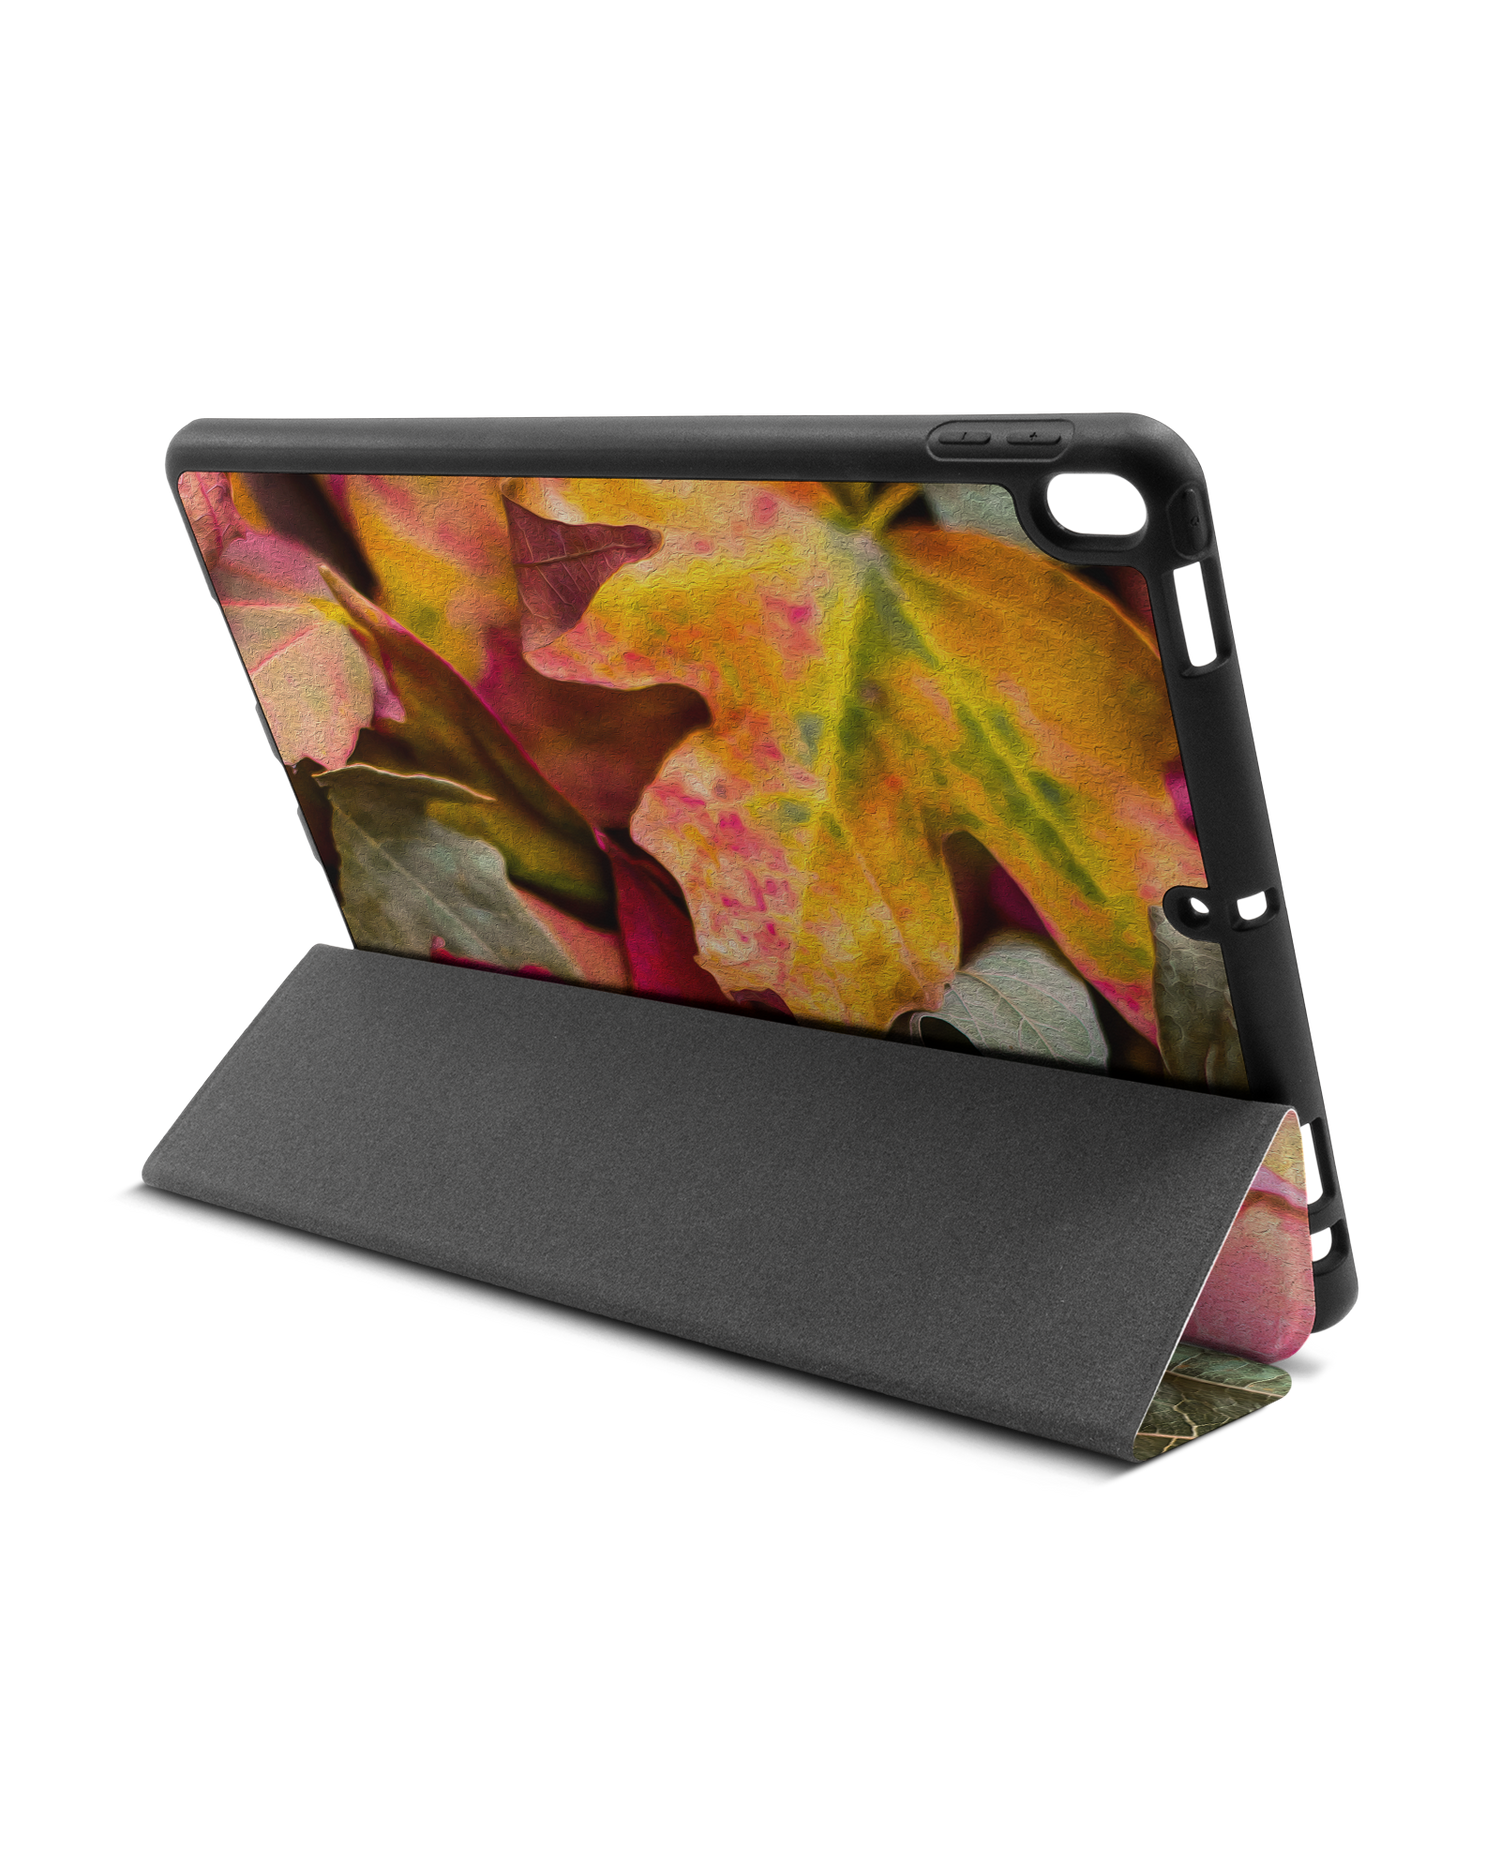 Autumn Leaves iPad Hülle mit Stifthalter Apple iPad Pro 10.5